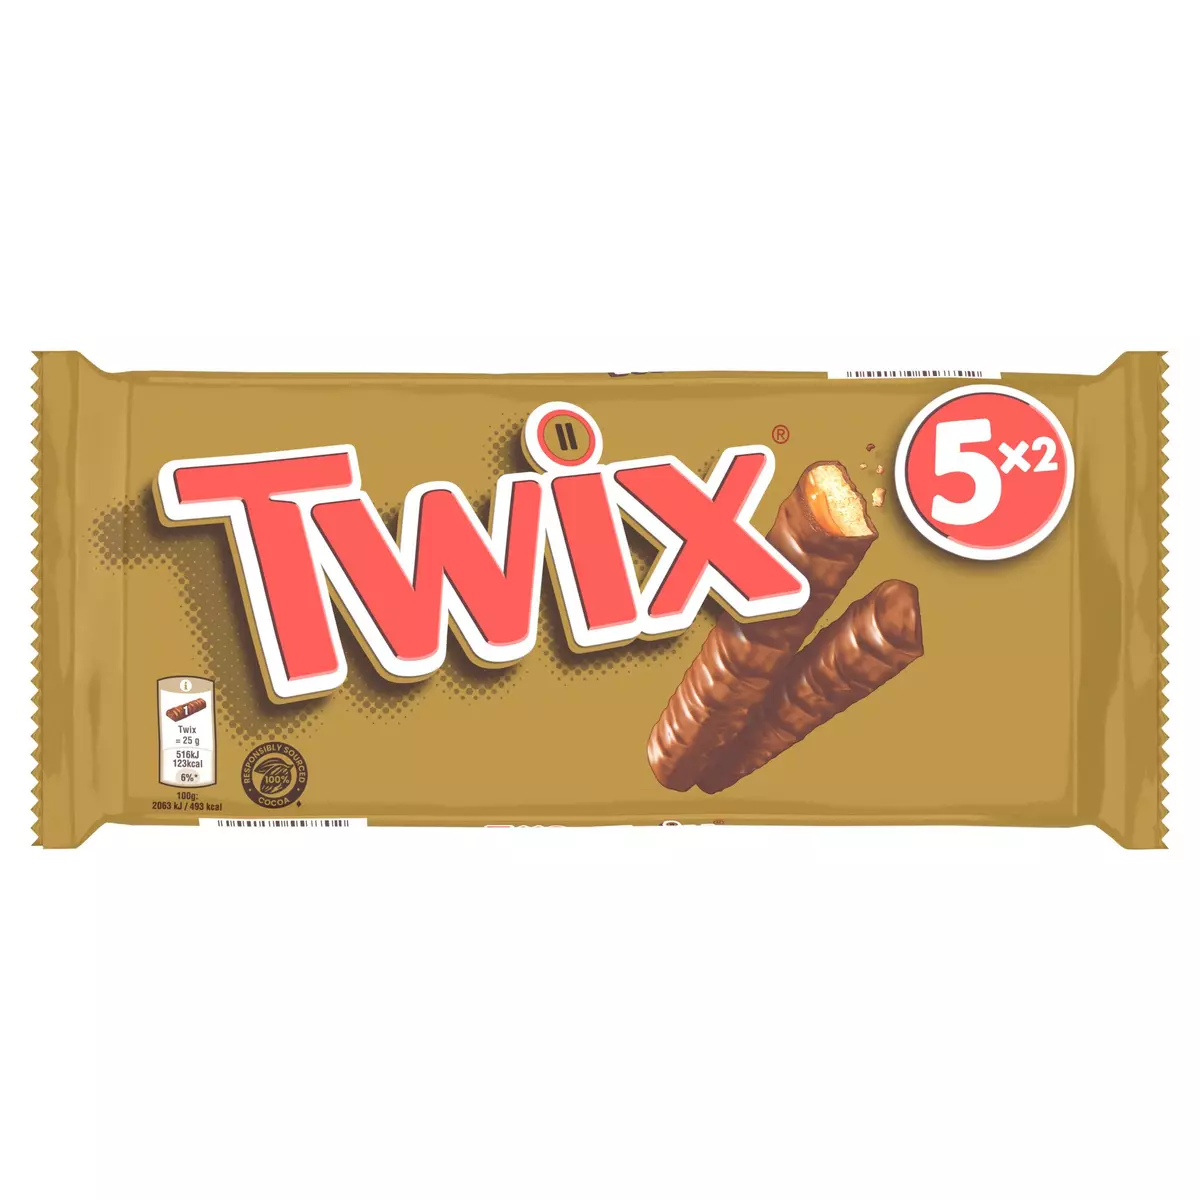 TWIX Barres chocolatées au biscuit recouvert de caramel 5x2 barres 250g